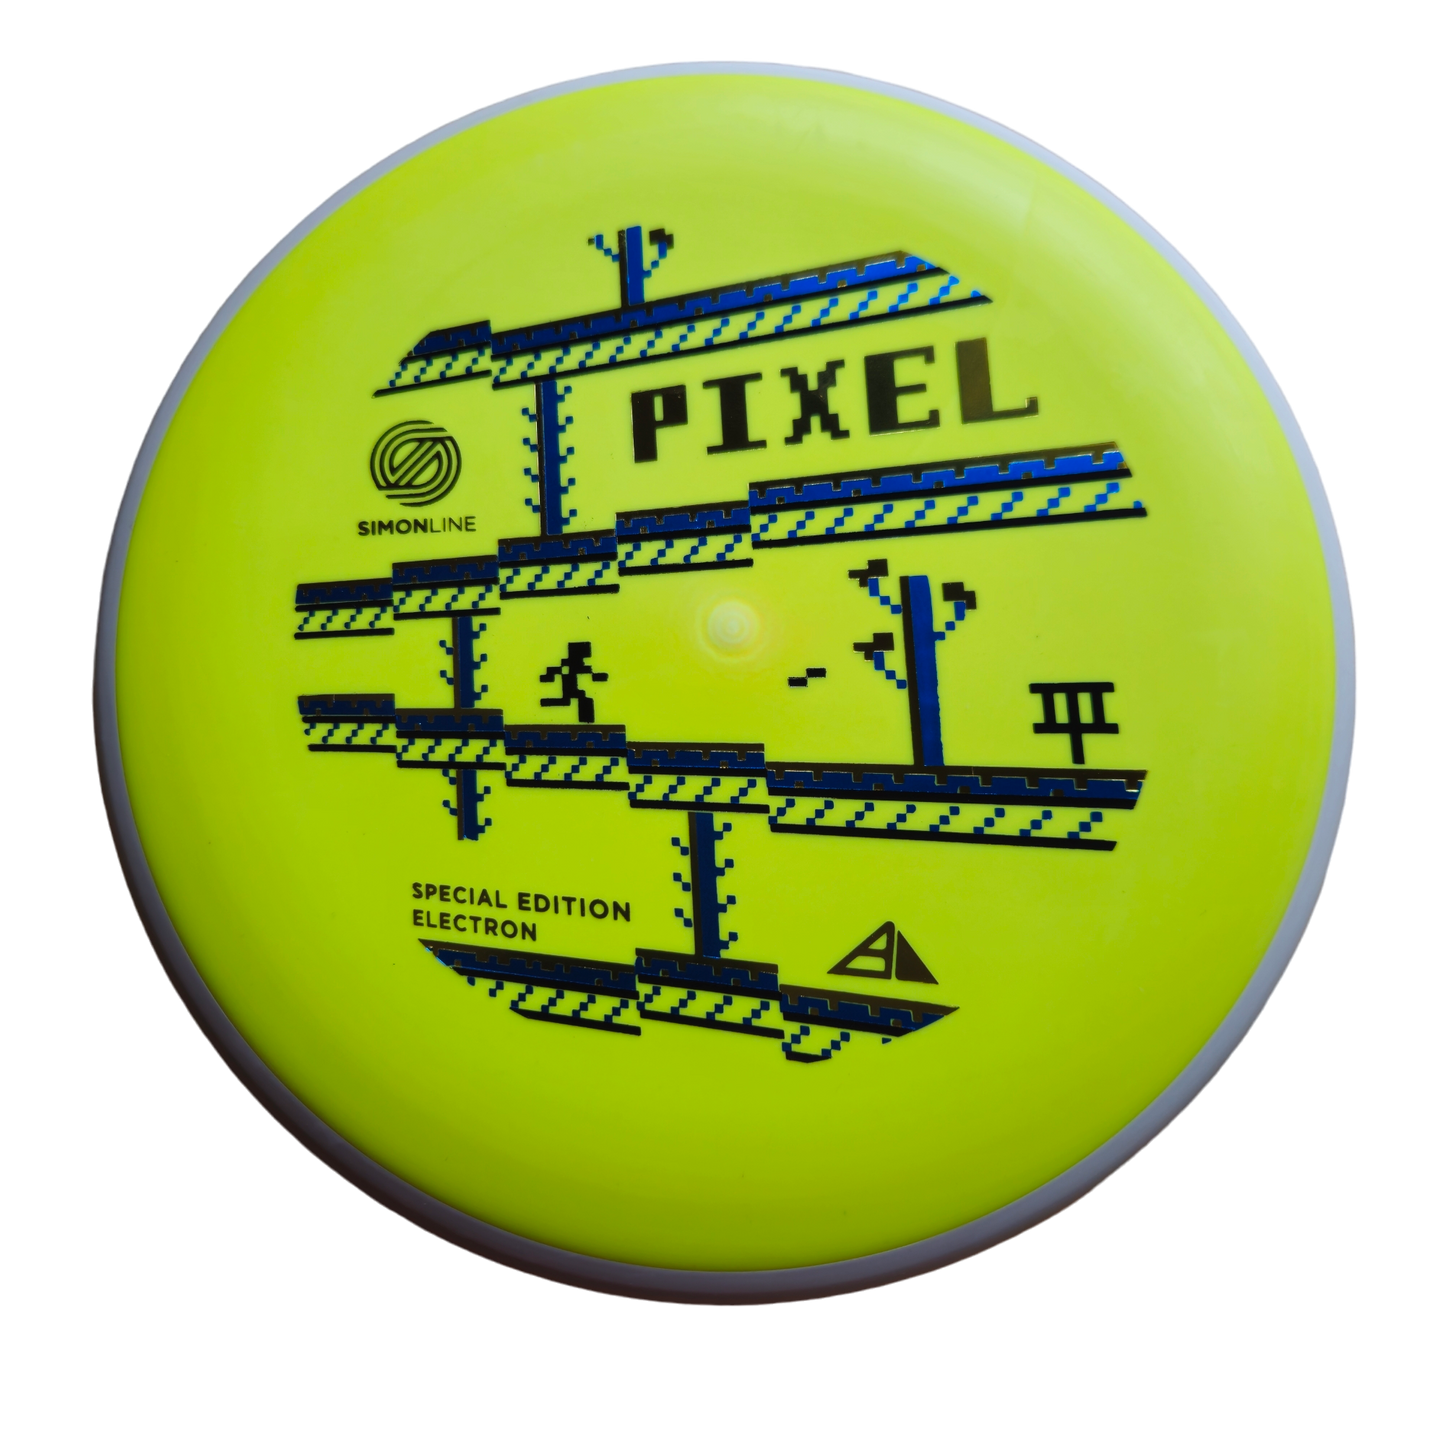 Axiom Simon Line Electron Pixel - Special Edition - Electron